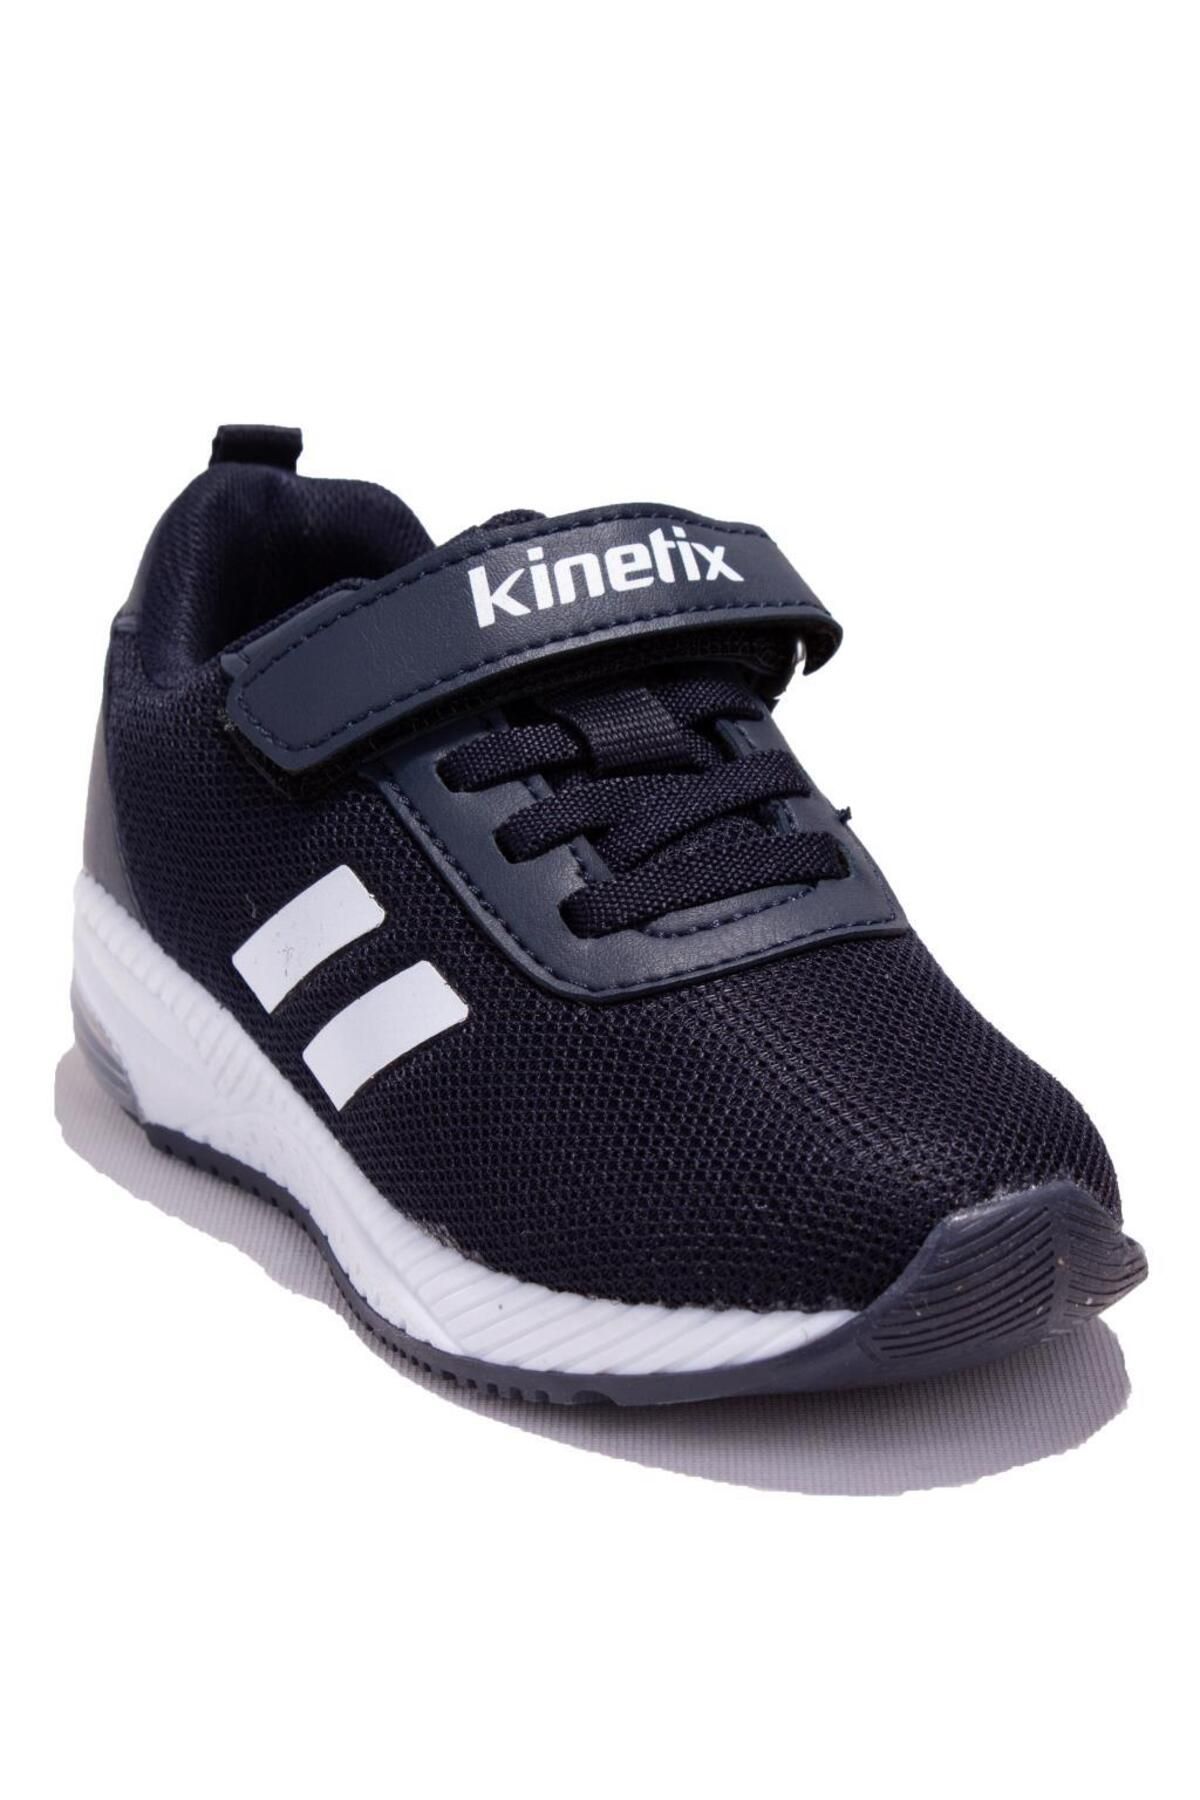 Kinetix Korper Iı Lacivert Beyaz Ortopedik Günlük Işıklı Erkek Çocuk Spor Ayakkabı